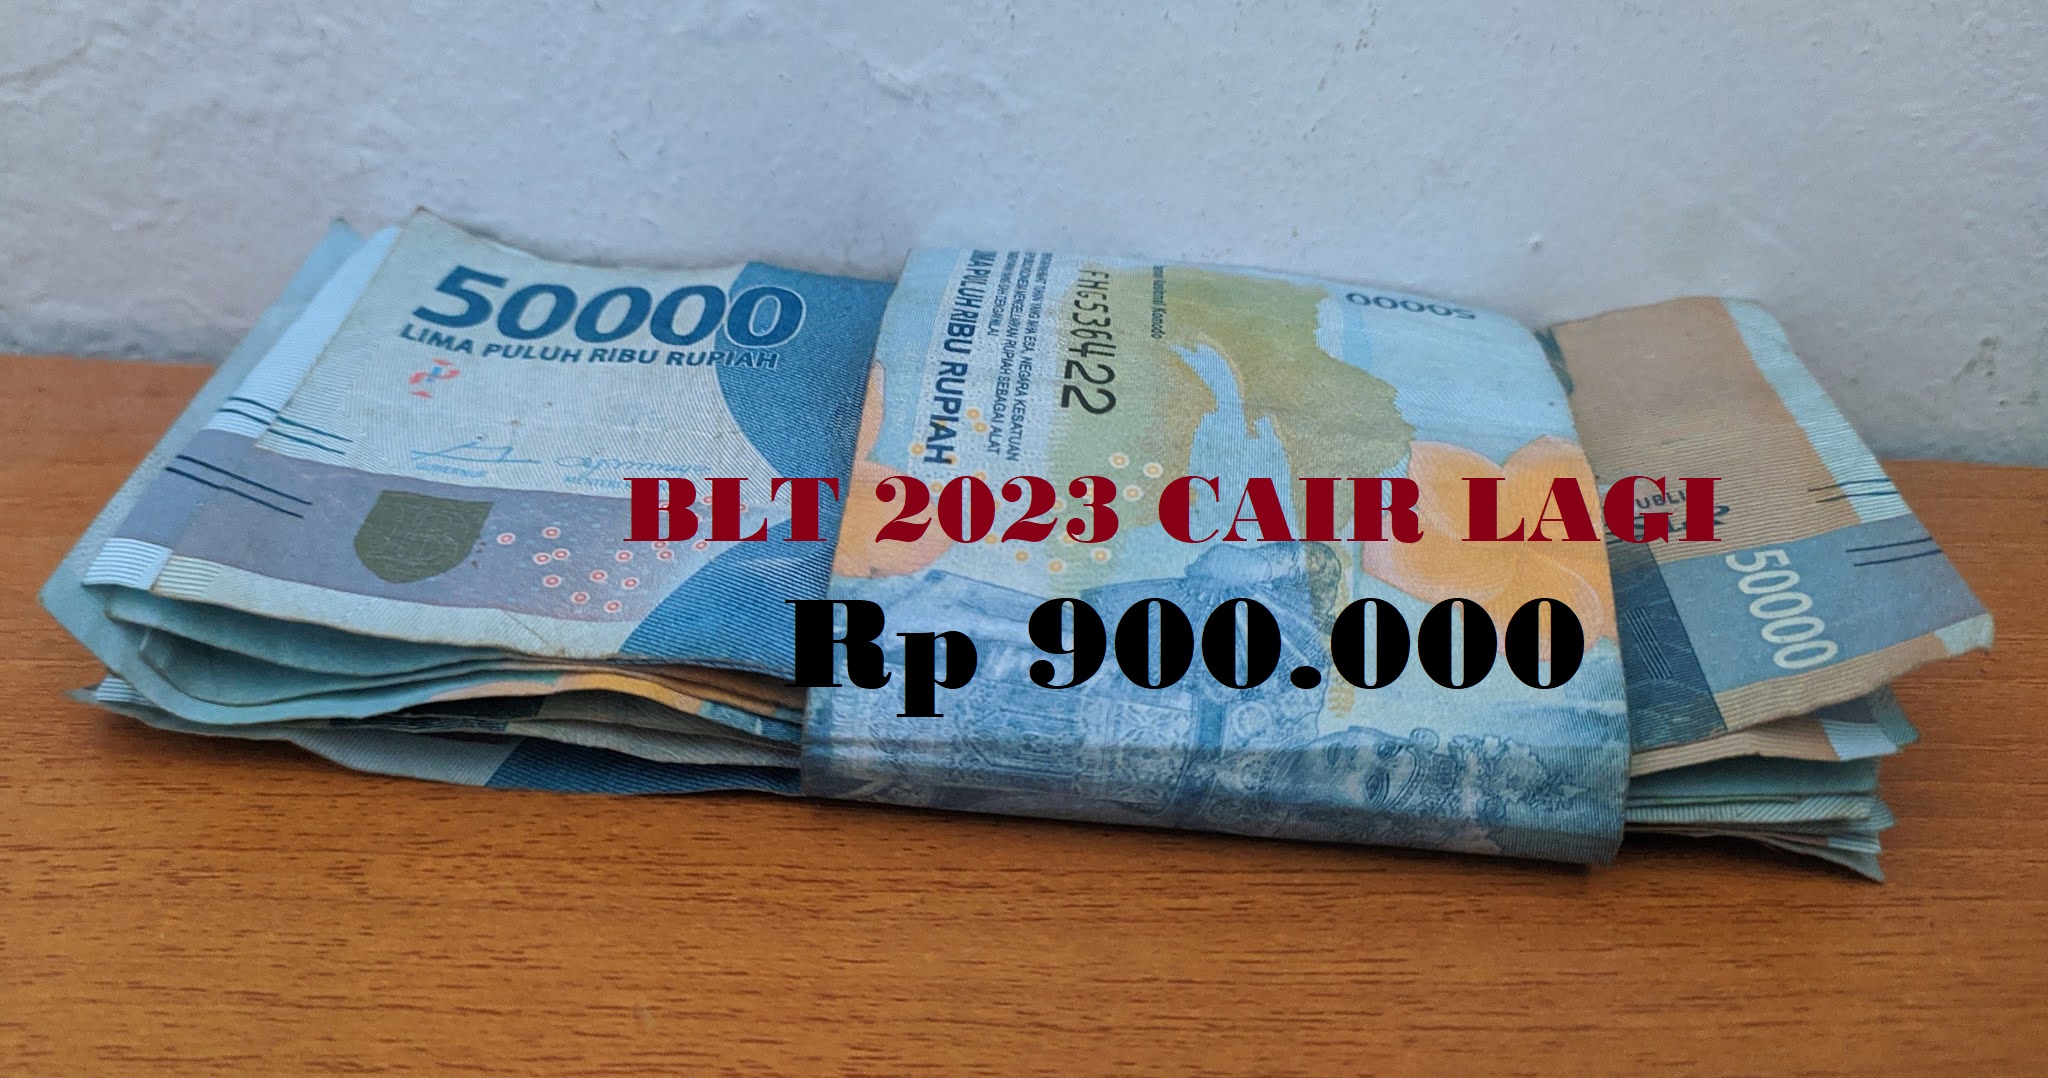 Dana BLT kembali cair Rp 900.000 di Tahun 2023.